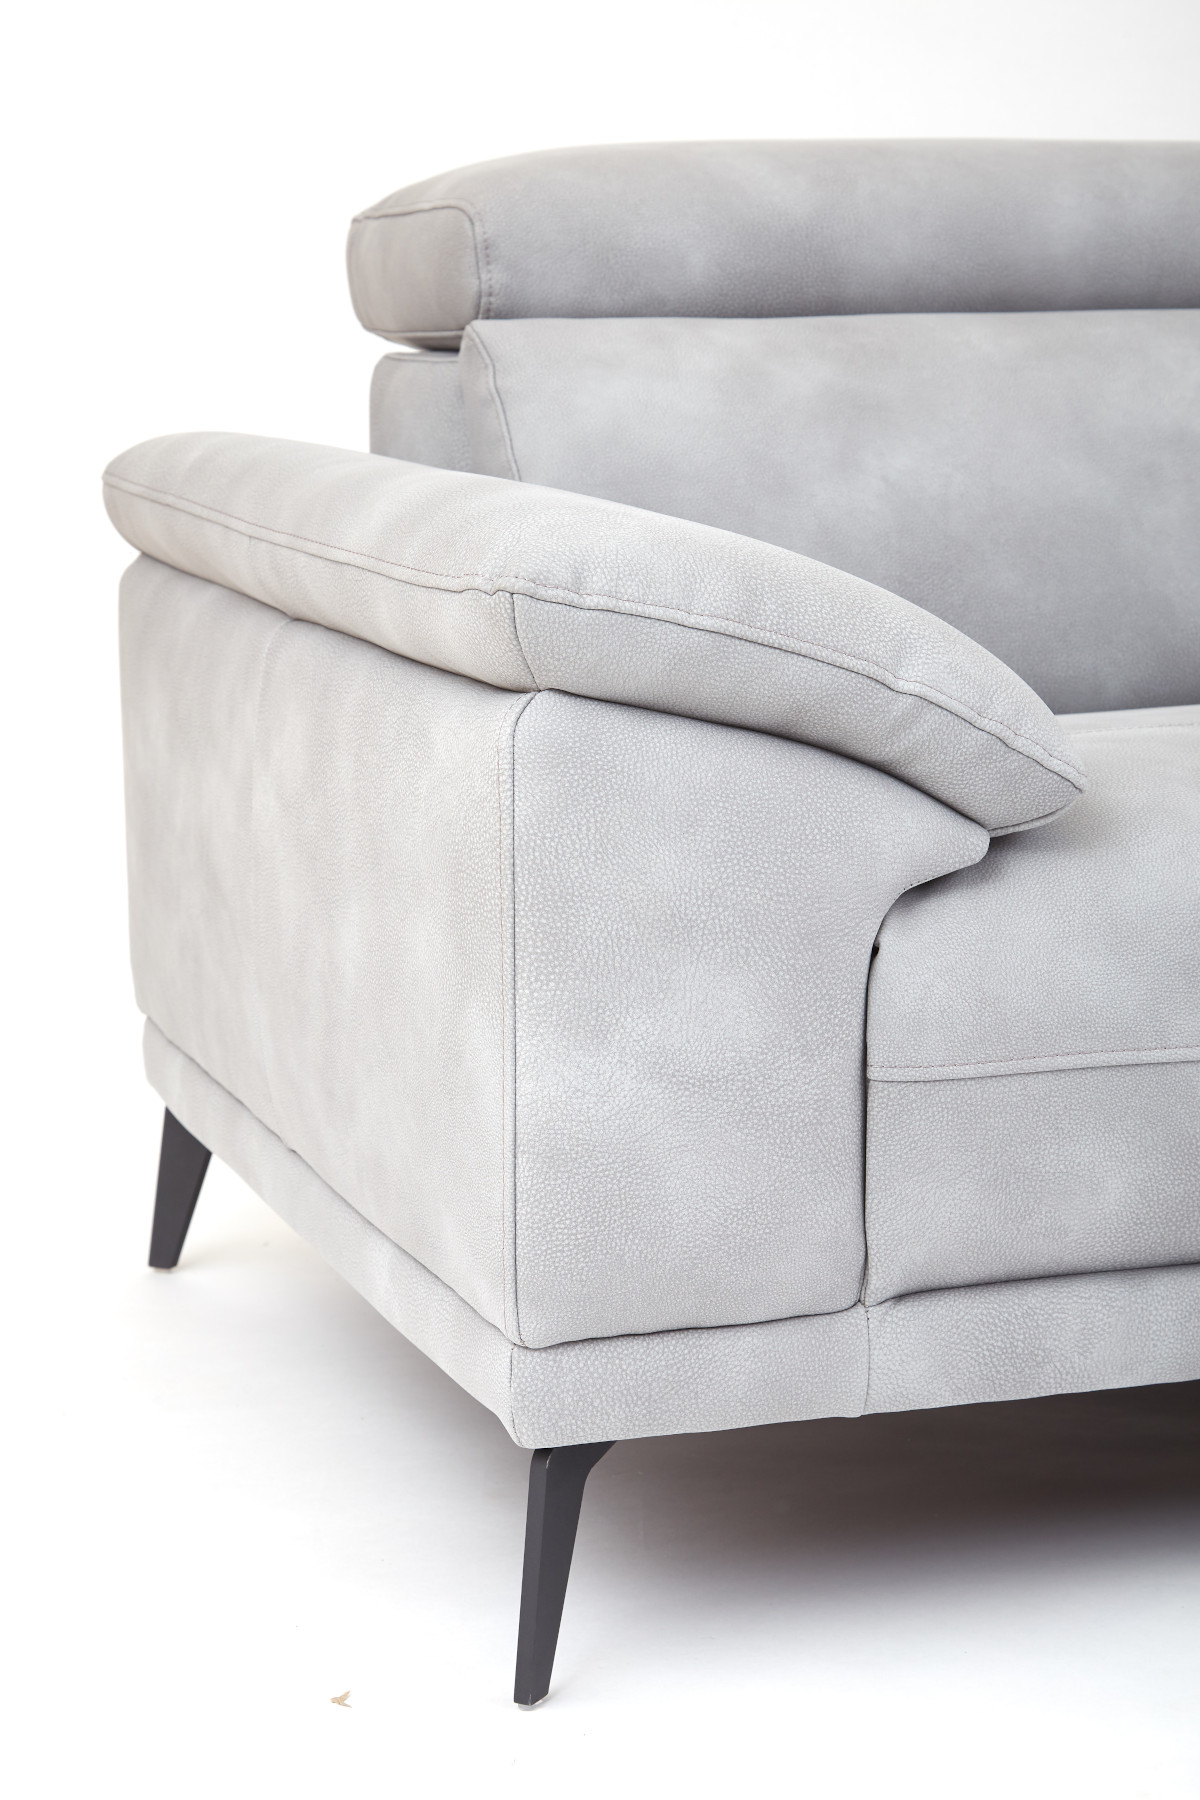 Montero 3 Seater Sofa - Grey